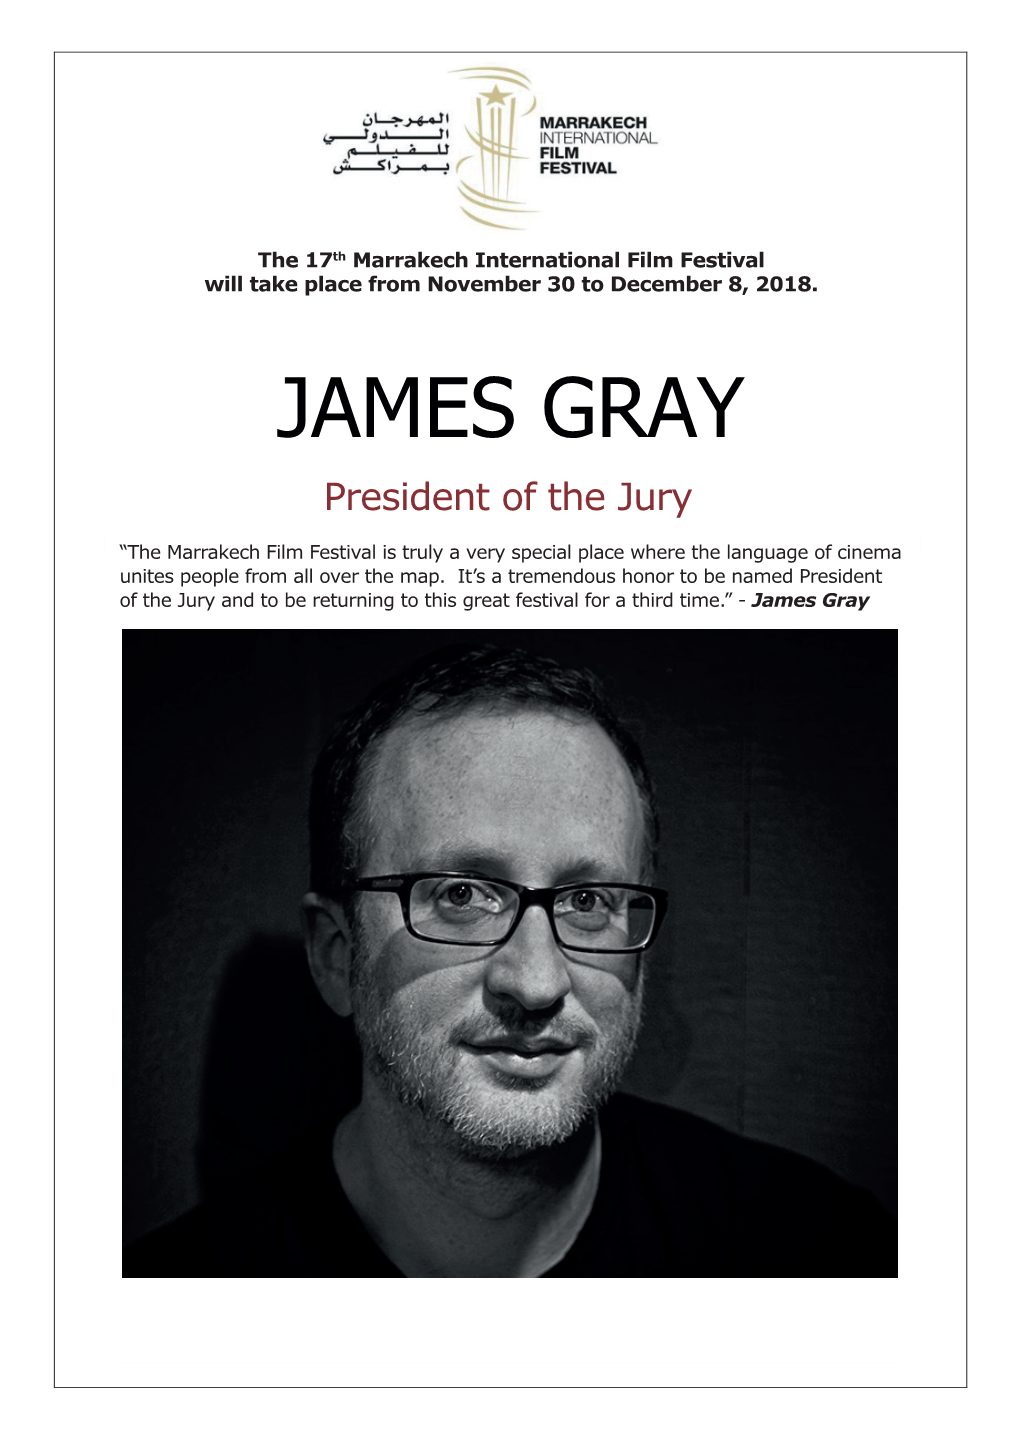 JAMES GRAY Presidentprésident of Du the Jury Jury